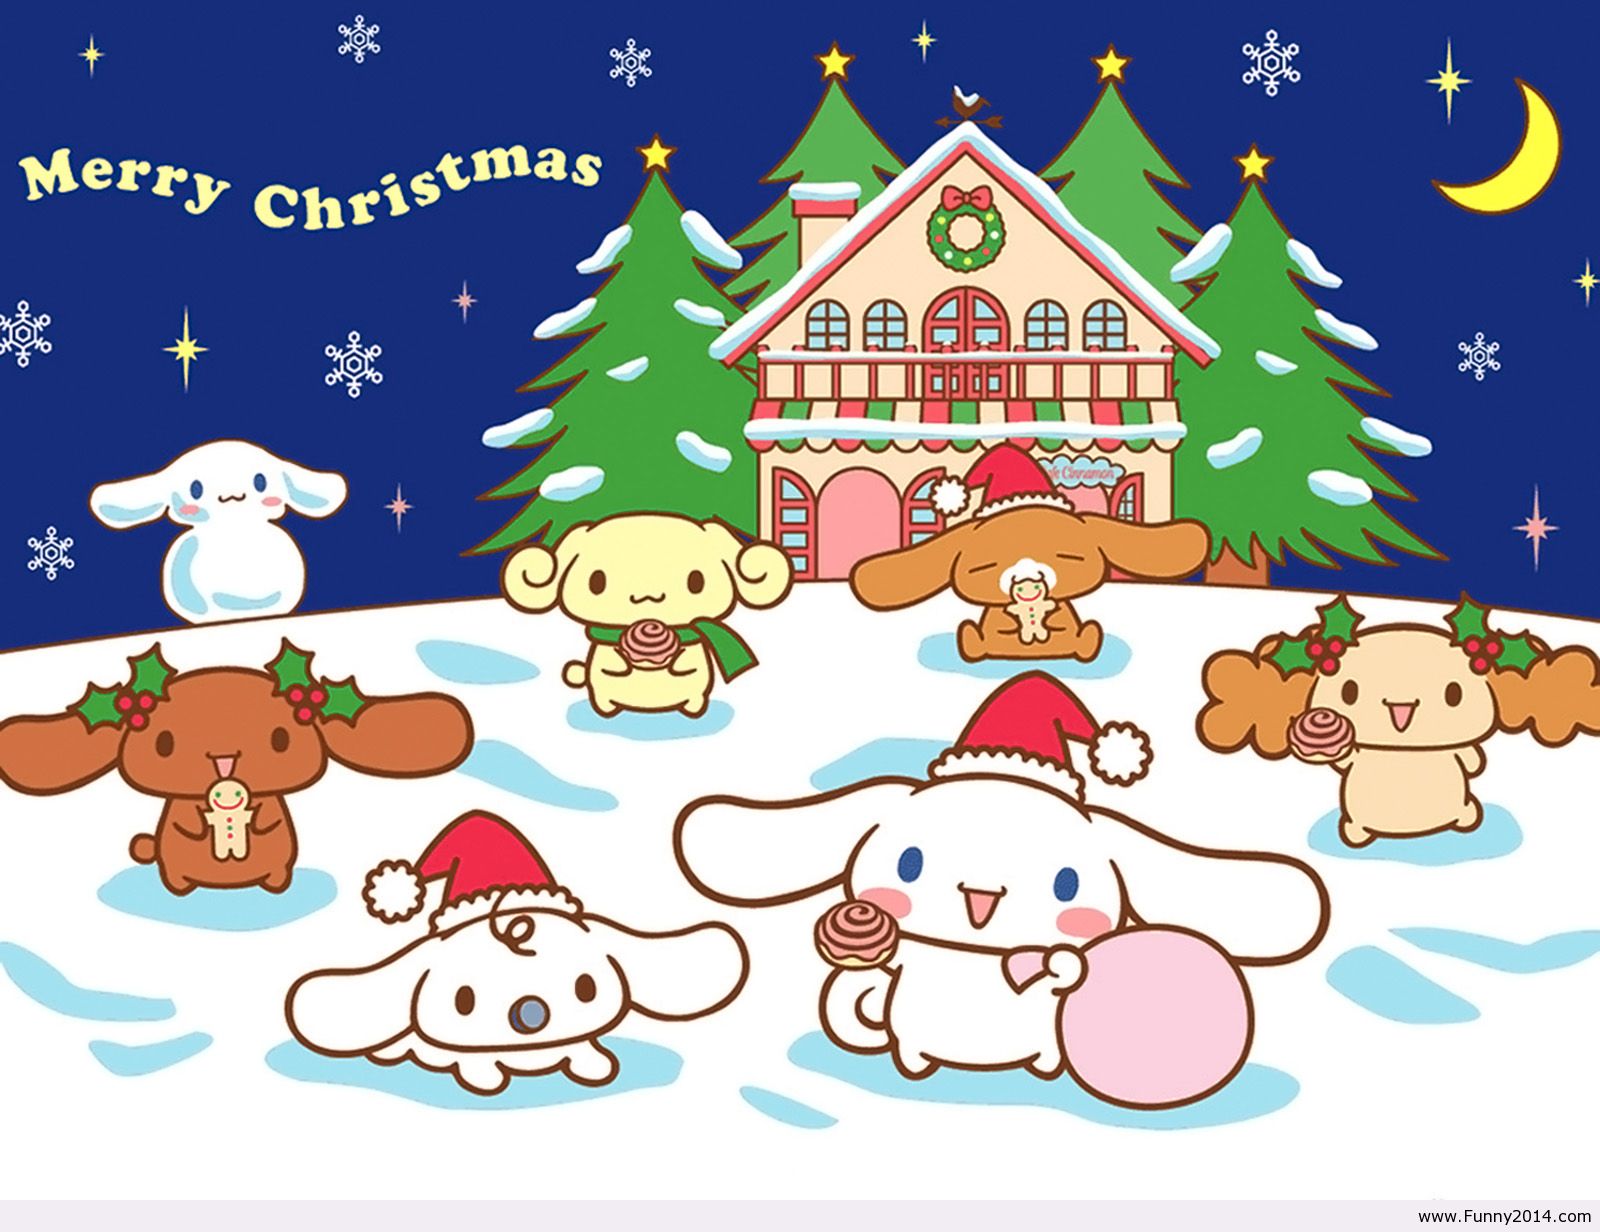 2014, Christmas, Funny Christmas - Merry Christmas Chibi Gif - HD Wallpaper 